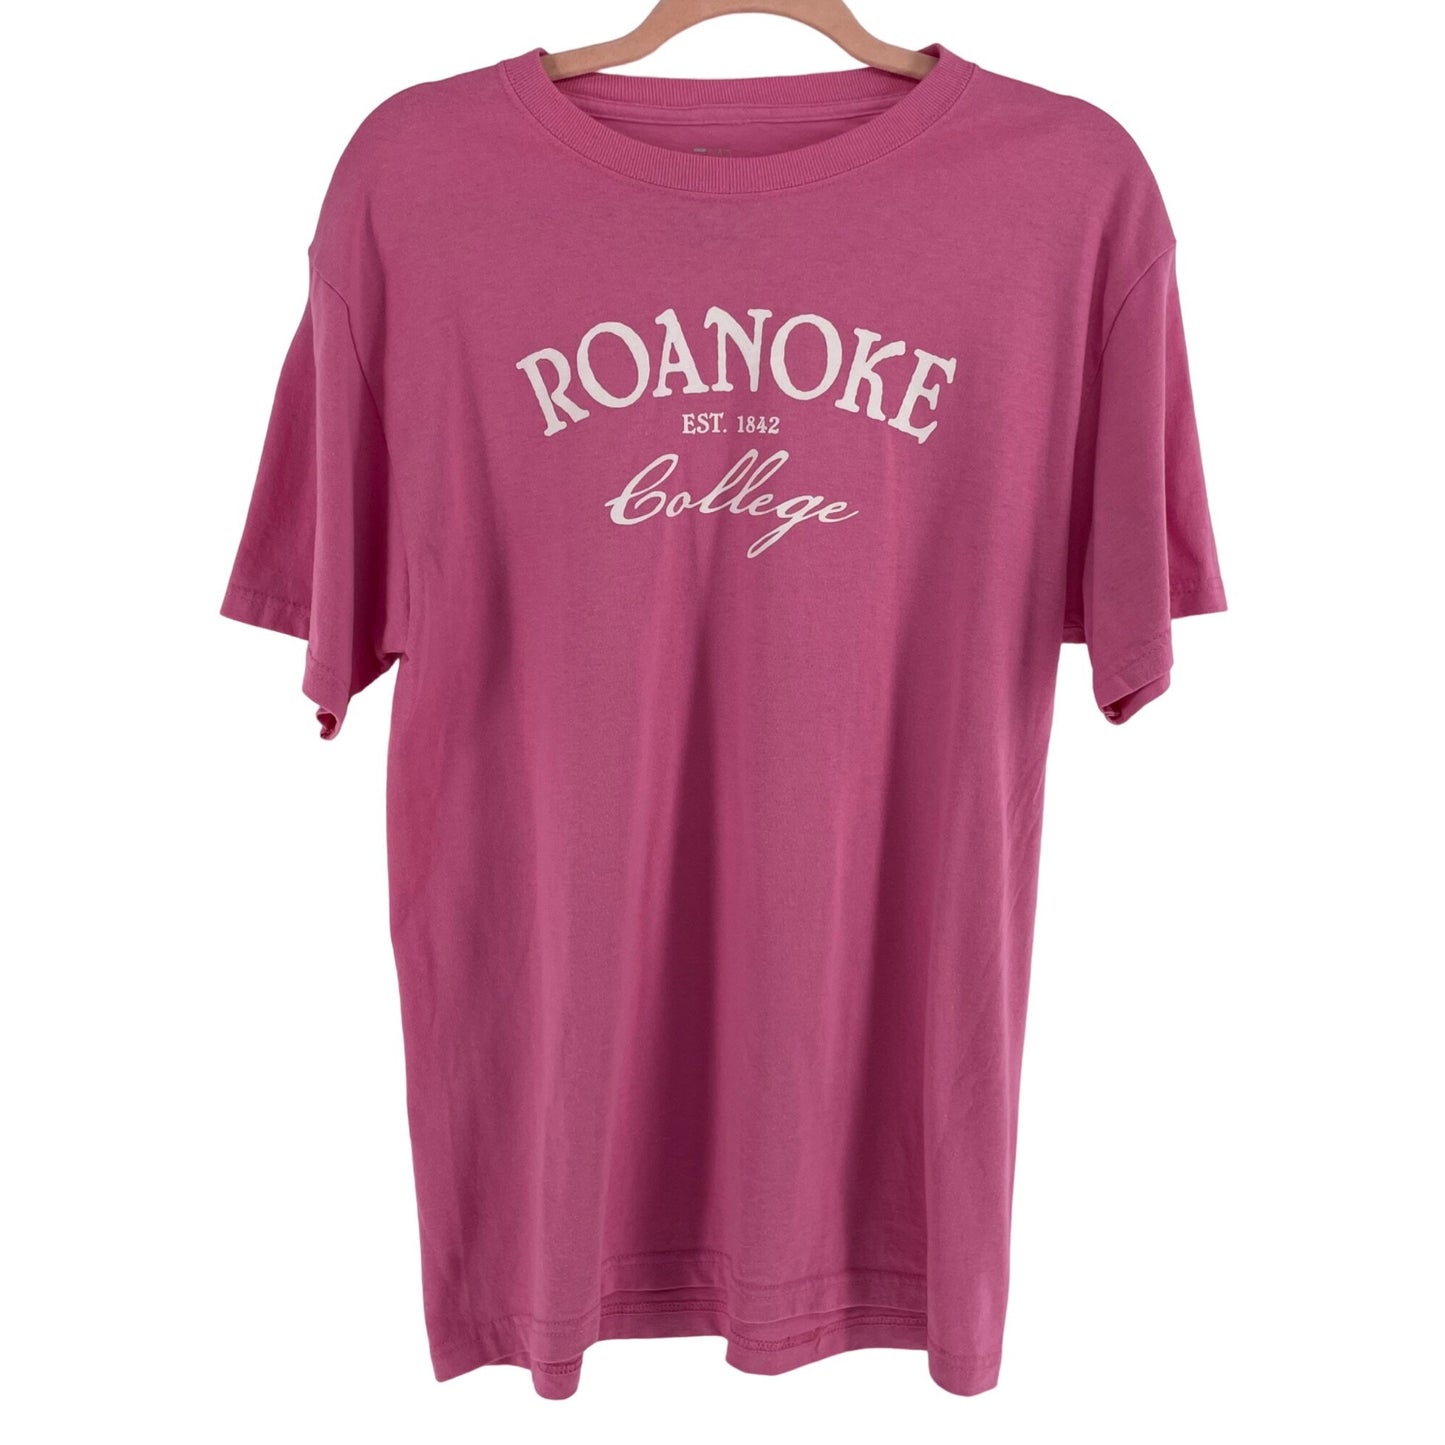 J America Sportswear Women's Roanoke College Est 1842 Size Medium Pink T-Shirt